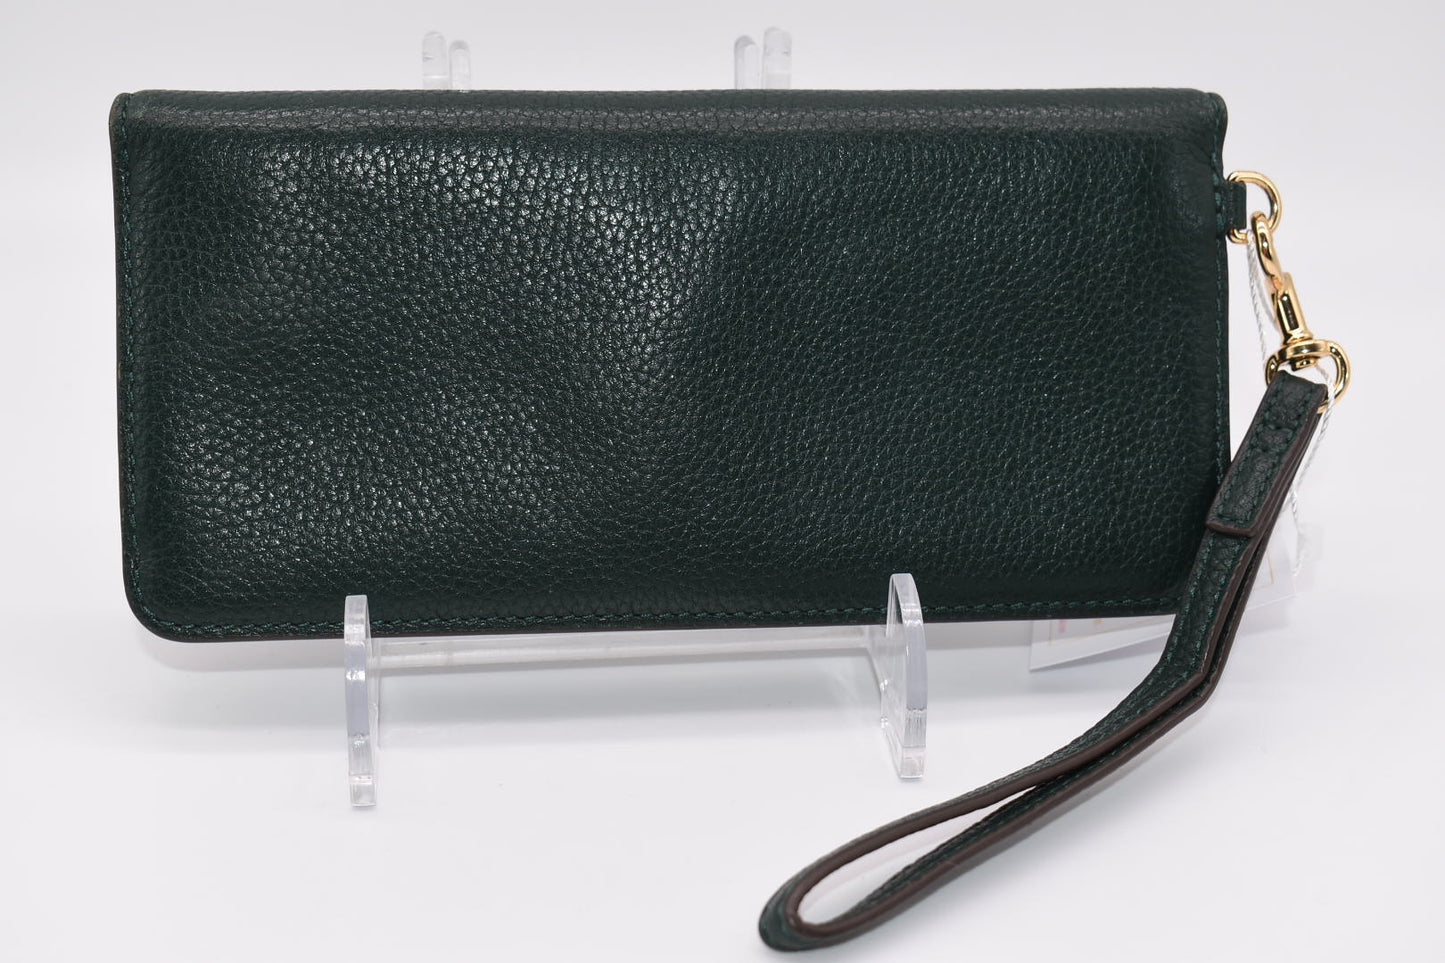 Tory Burch Pebble Leather Wallet/ Wristlet in Jitney Green